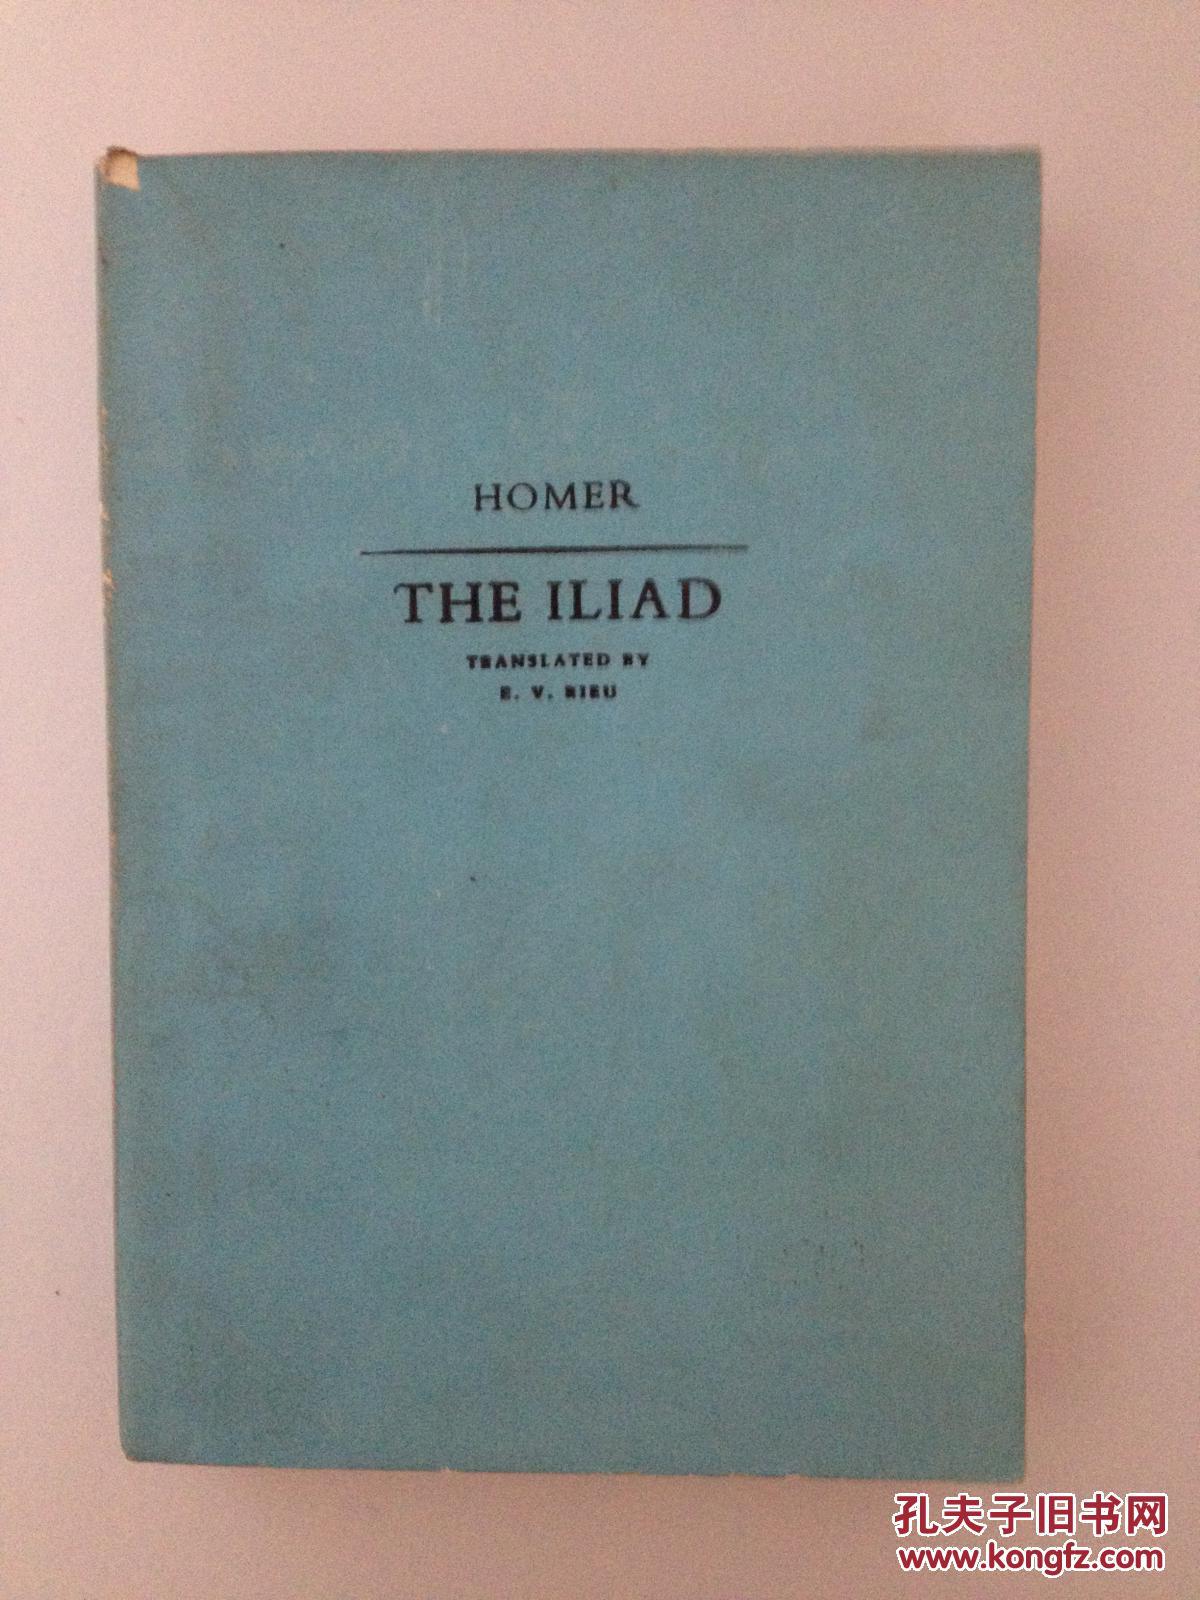 【荷马史诗英文版】 The Iliad by HOMER 伊利